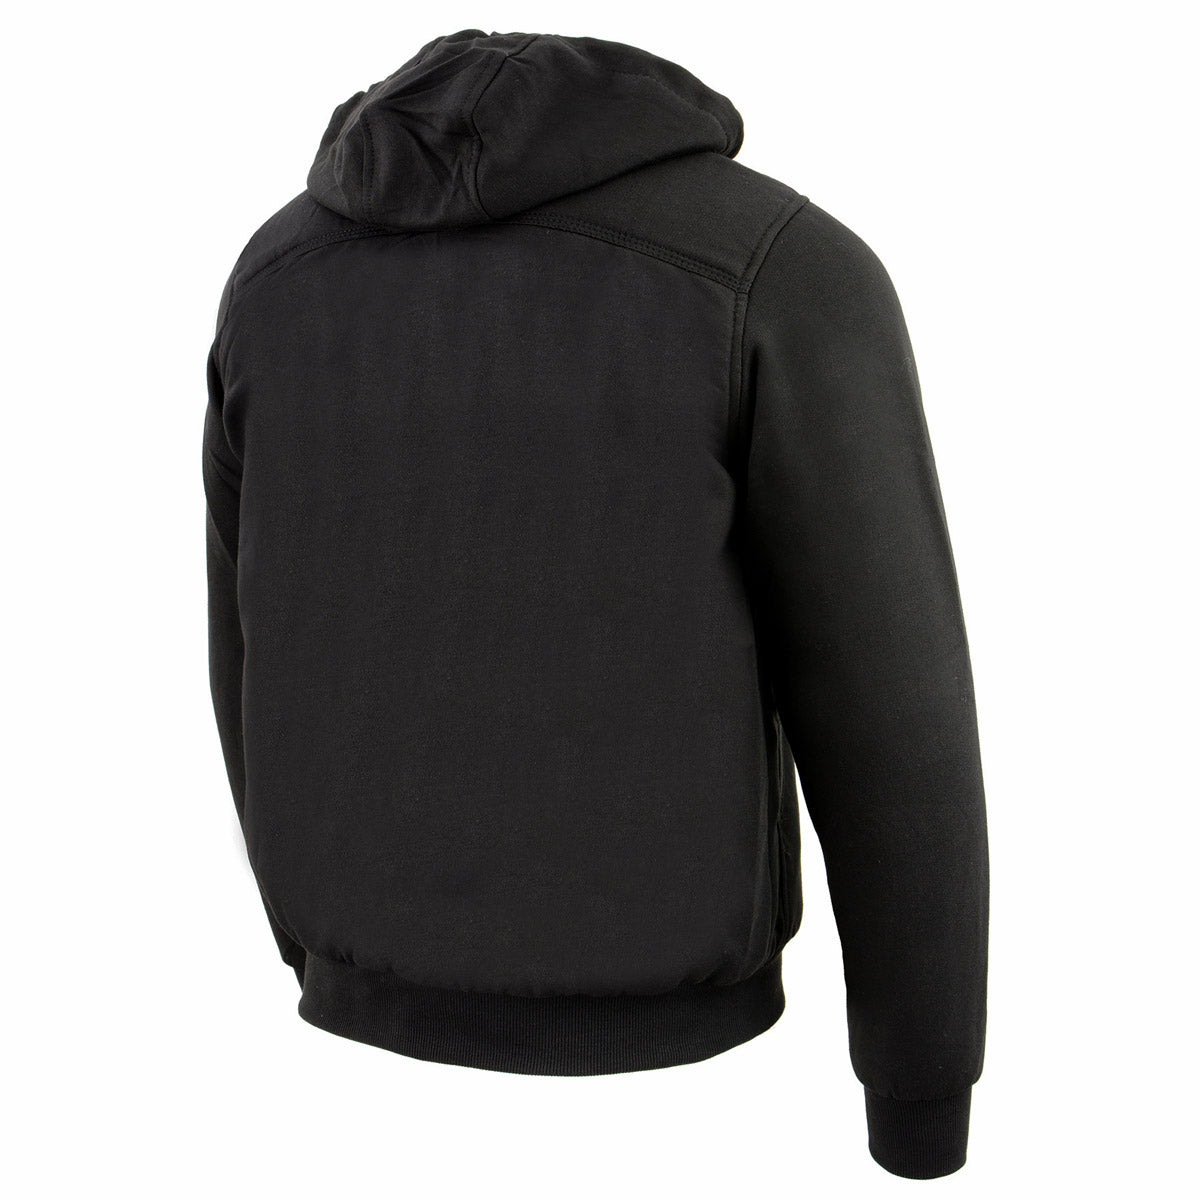 Nexgen Heat NXM1713SET Men's Black 'Fiery' Heated Hoodies - Front Zipper Textile Heated Jacket for Winter w/Battery Pack